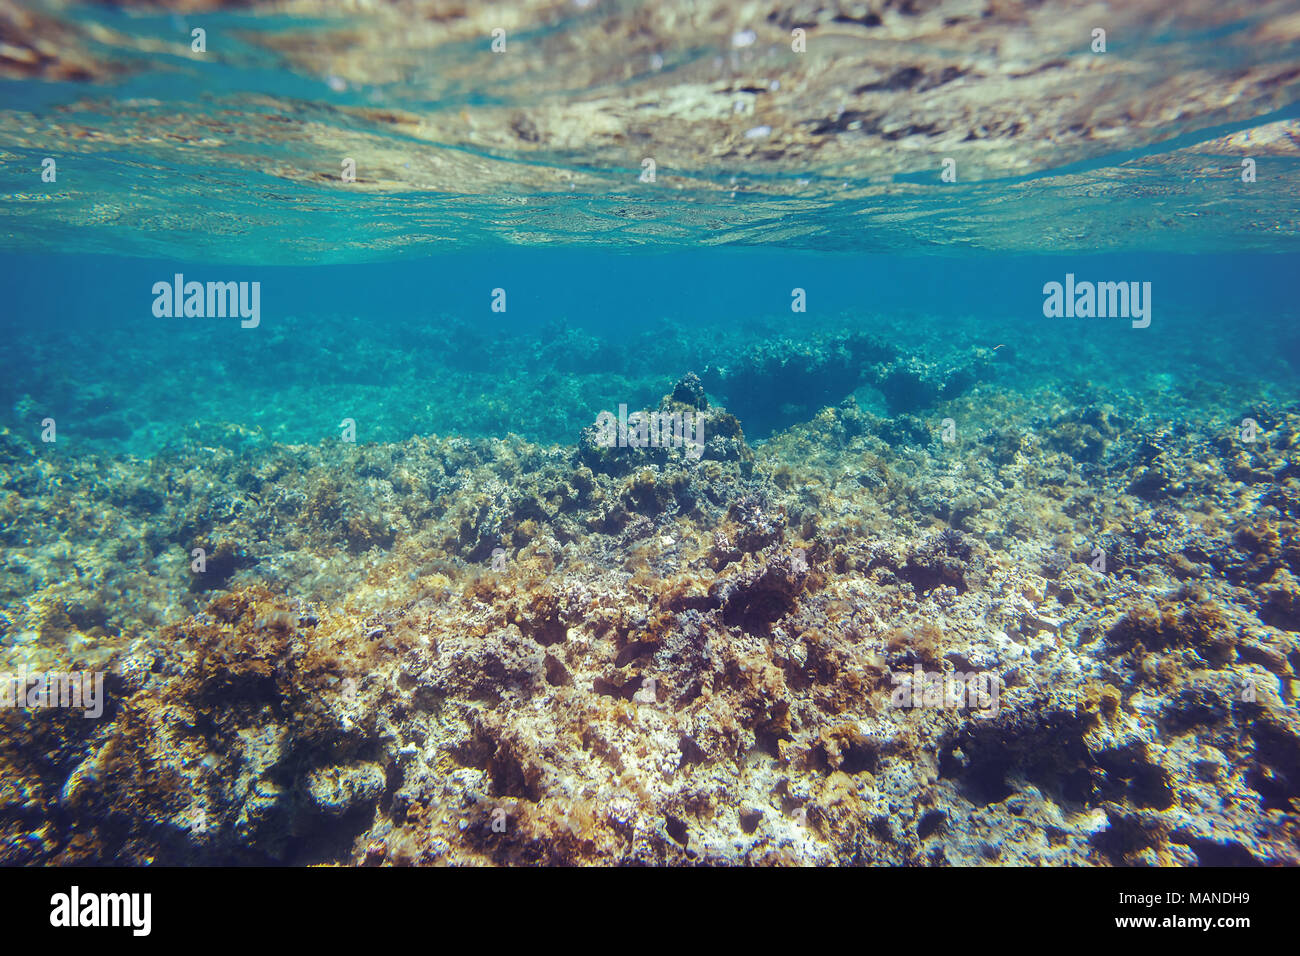 Vista de los fondos marinos, arrecifes de coral submarinos en el mar Caribe Foto de stock